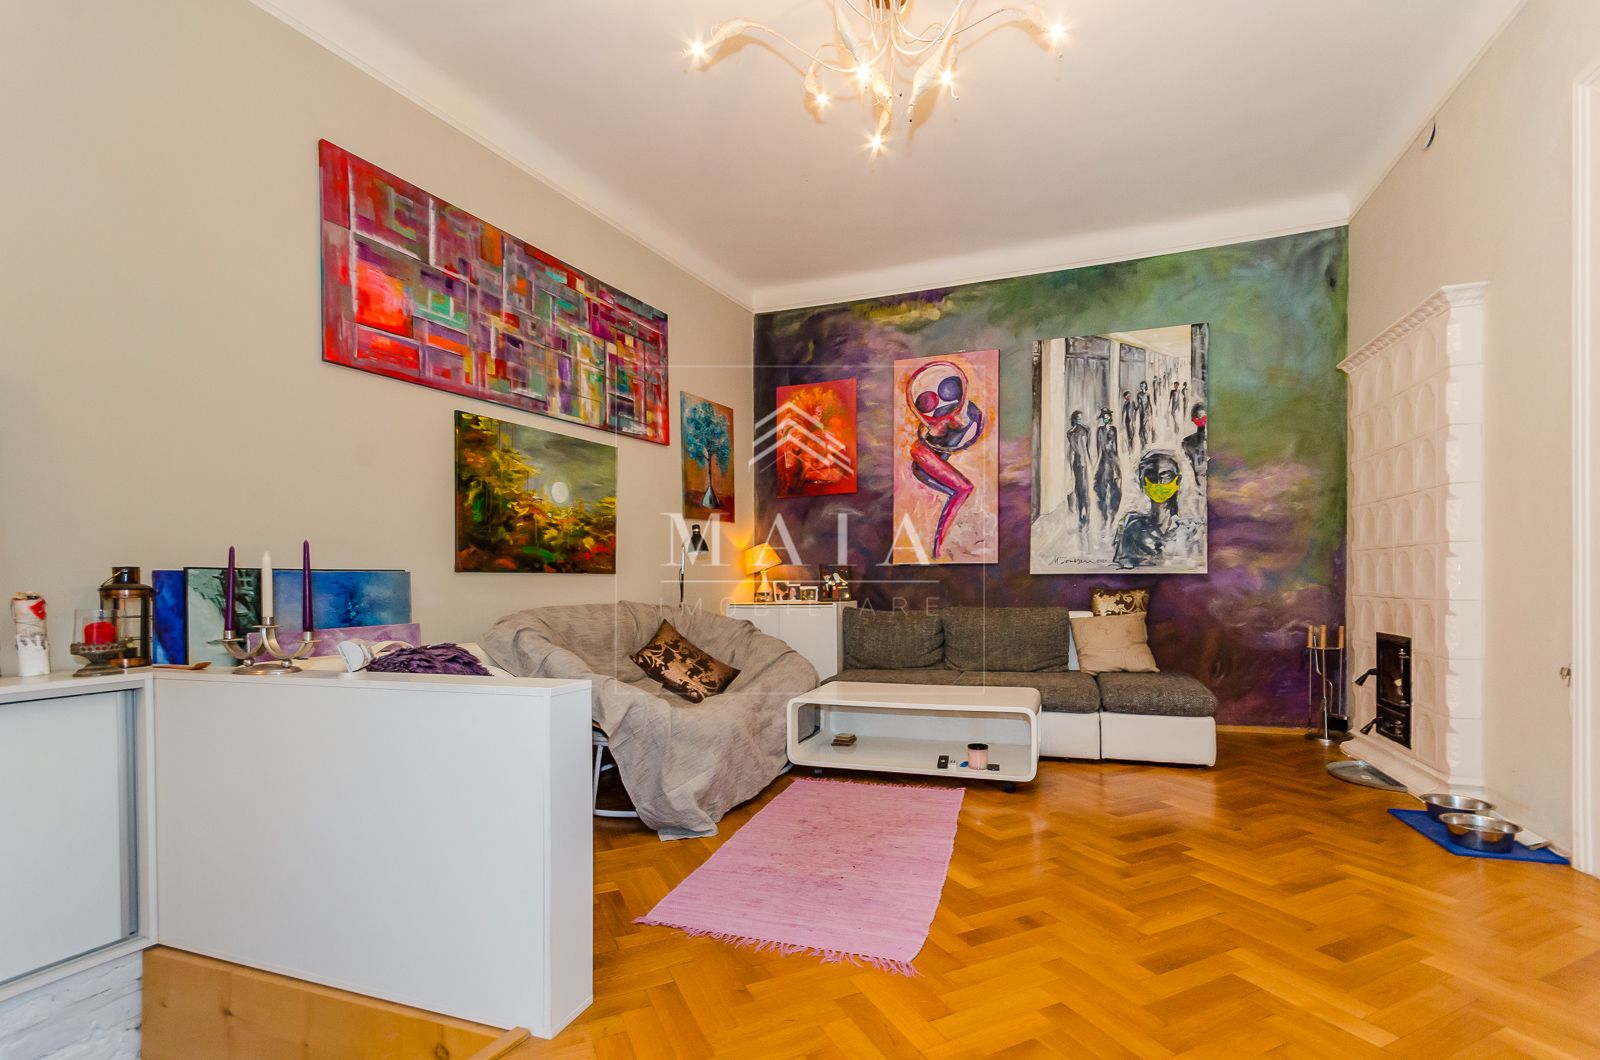 Apartament 3 camere, renovat, 90mp utili, Ultracentral-Piata Mare